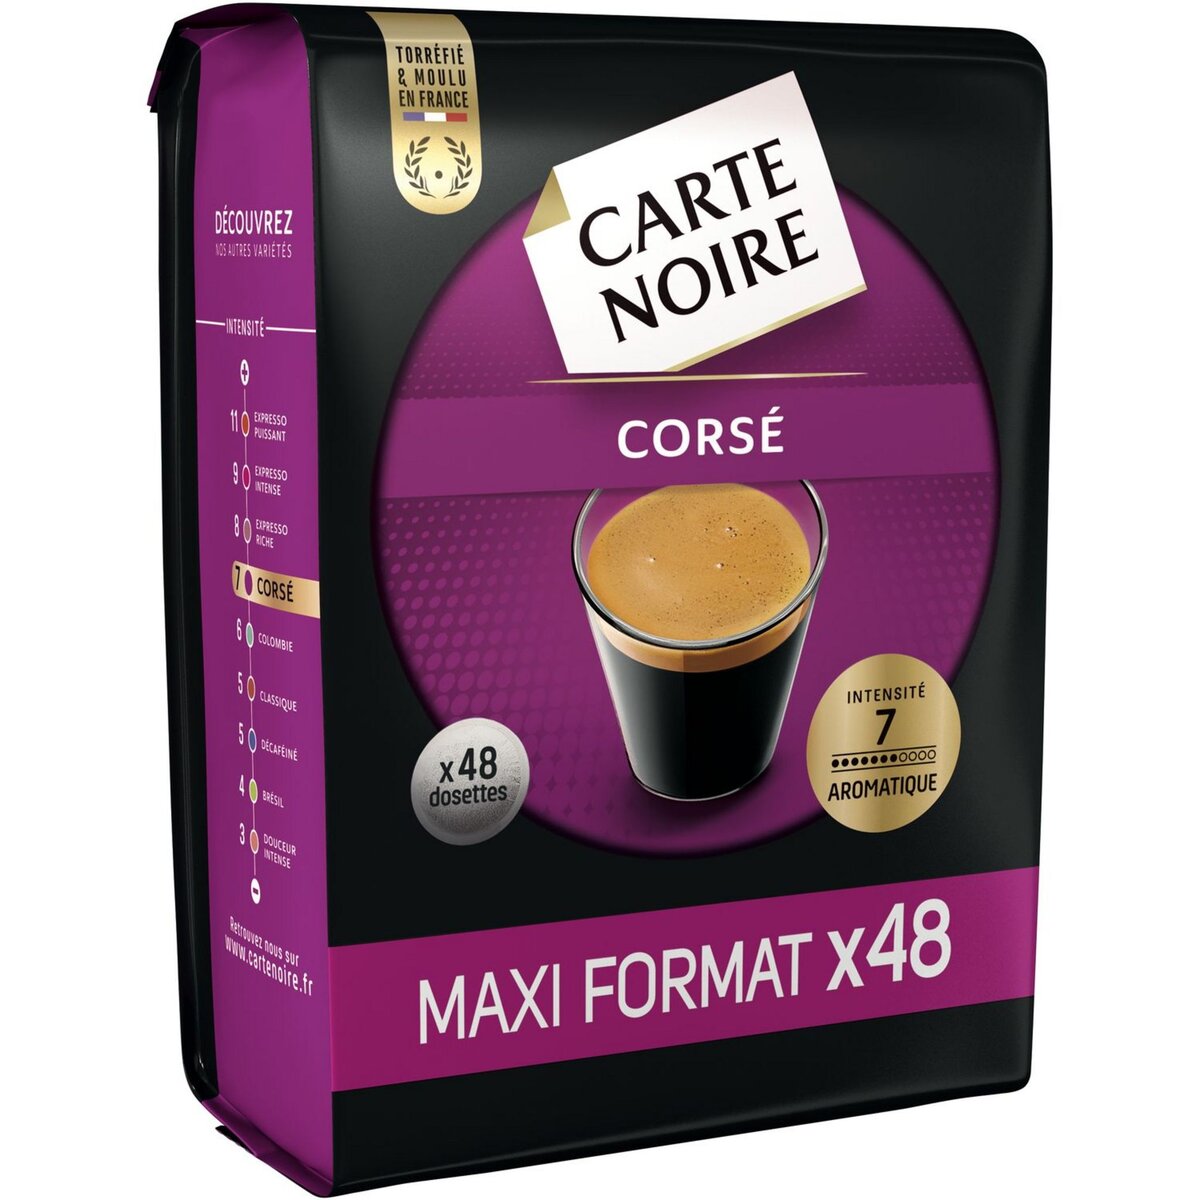 CARTE NOIRE Dosette intensité 7 maxi format x48 336g pas cher 